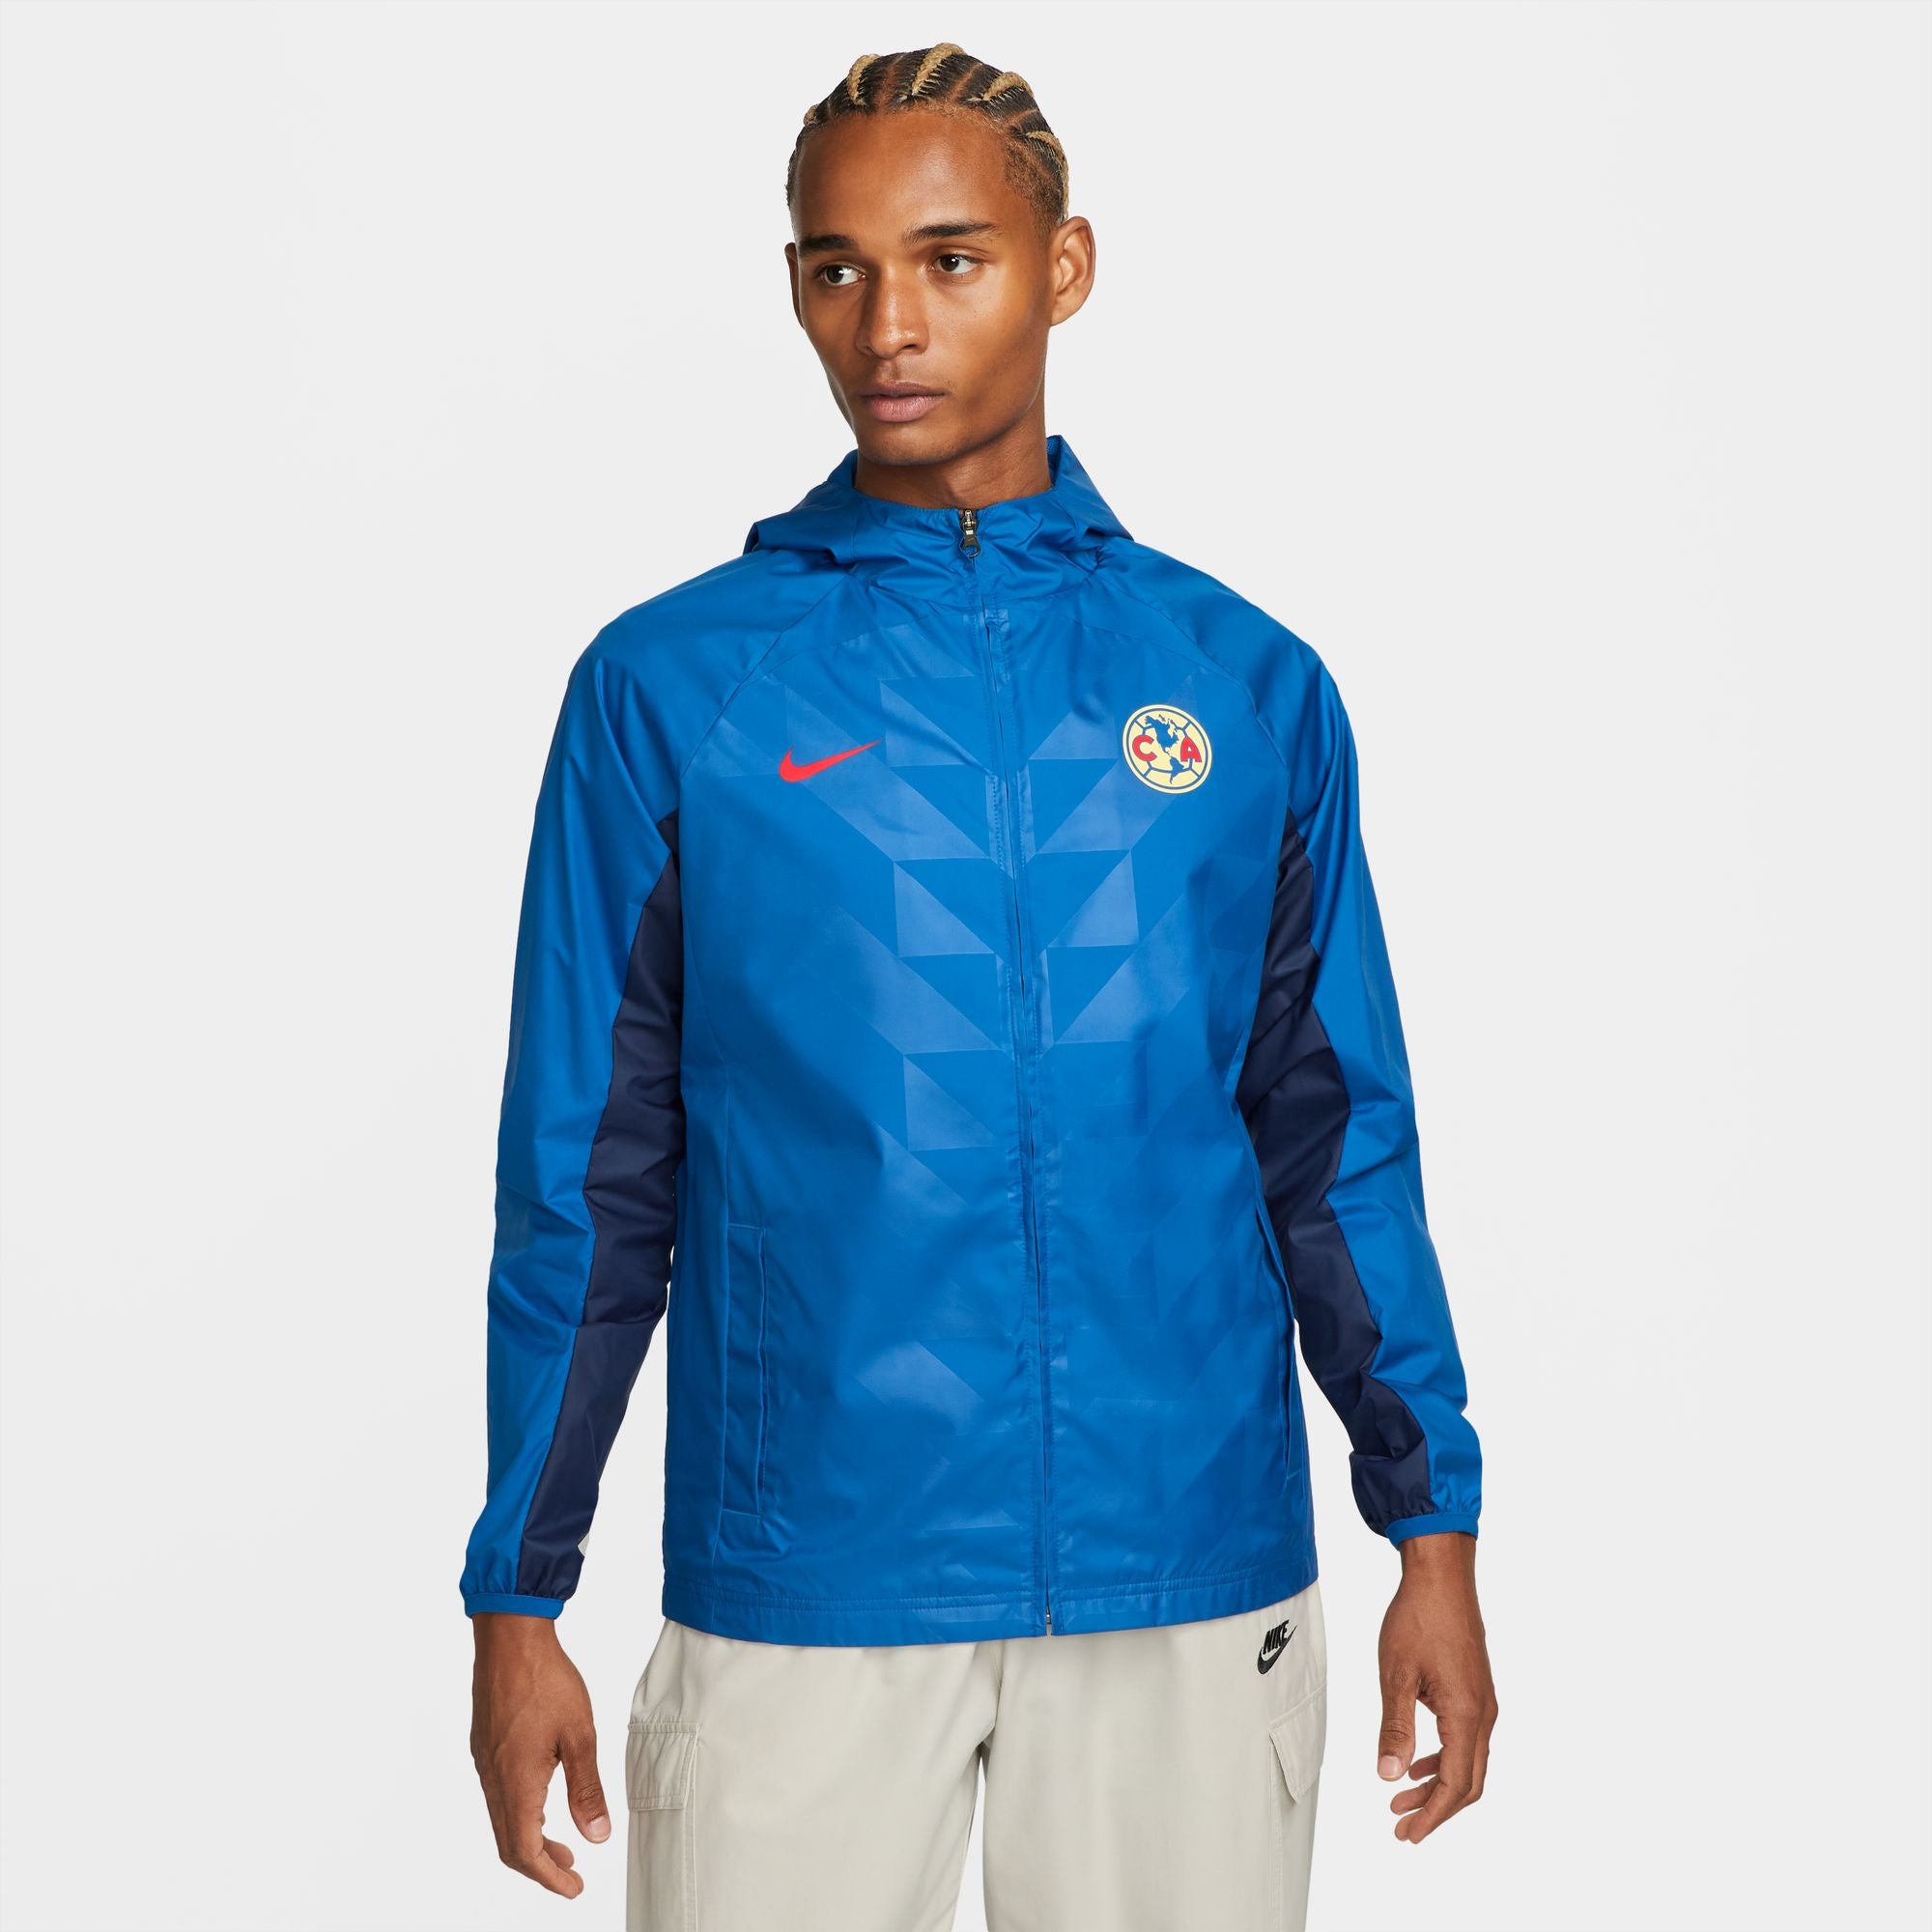 Nike Brazil AWF Men's Full-Zip Soccer Jacket DN1075-490 for Sale